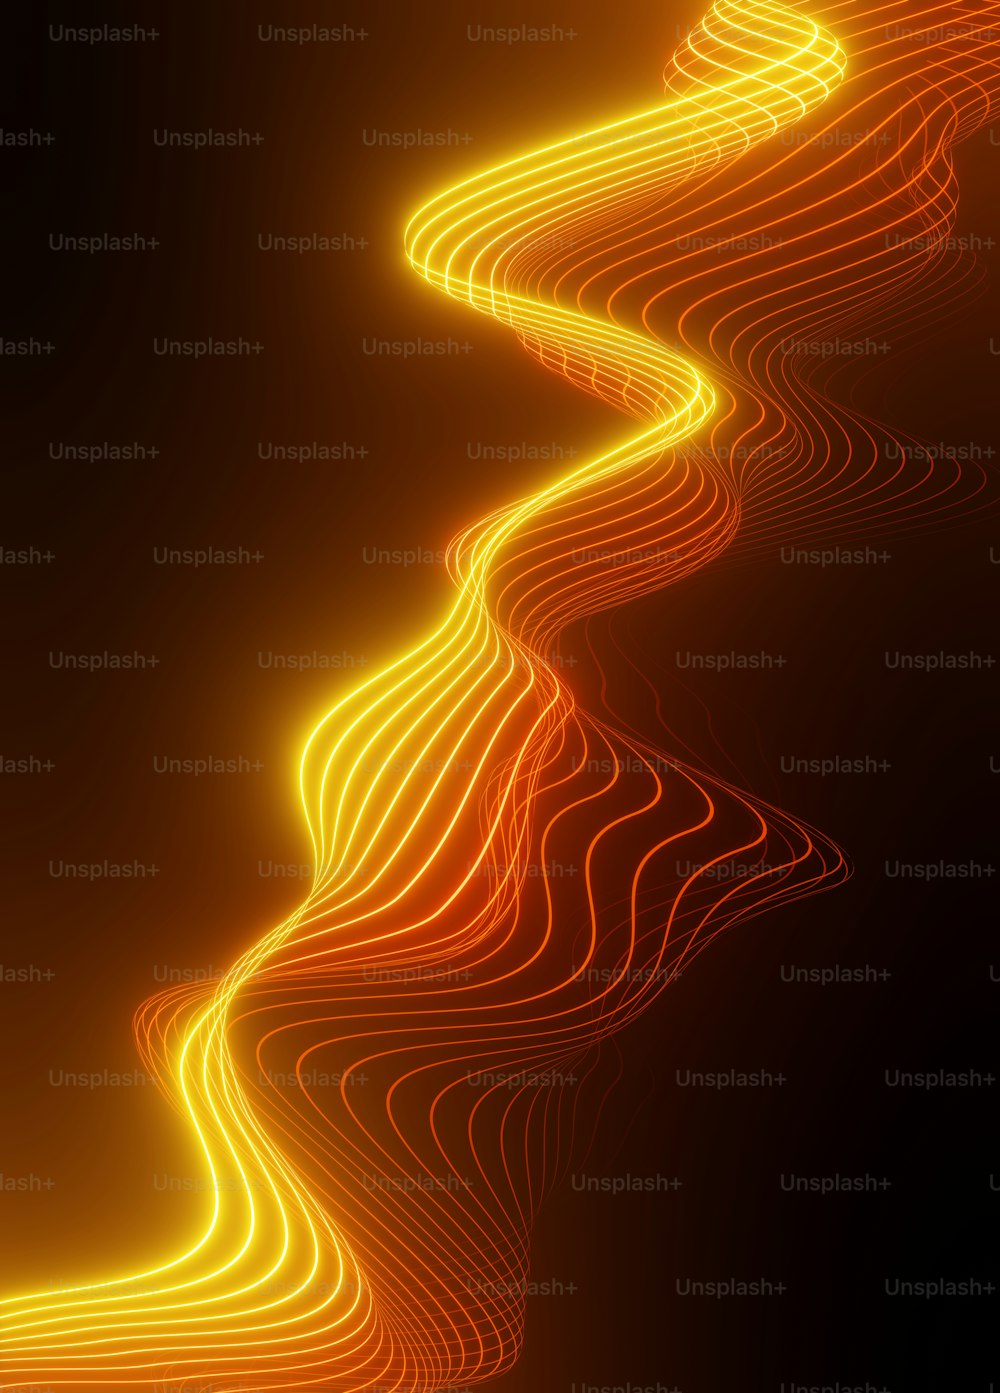 波状のオレンジ色の線の抽象的な画像